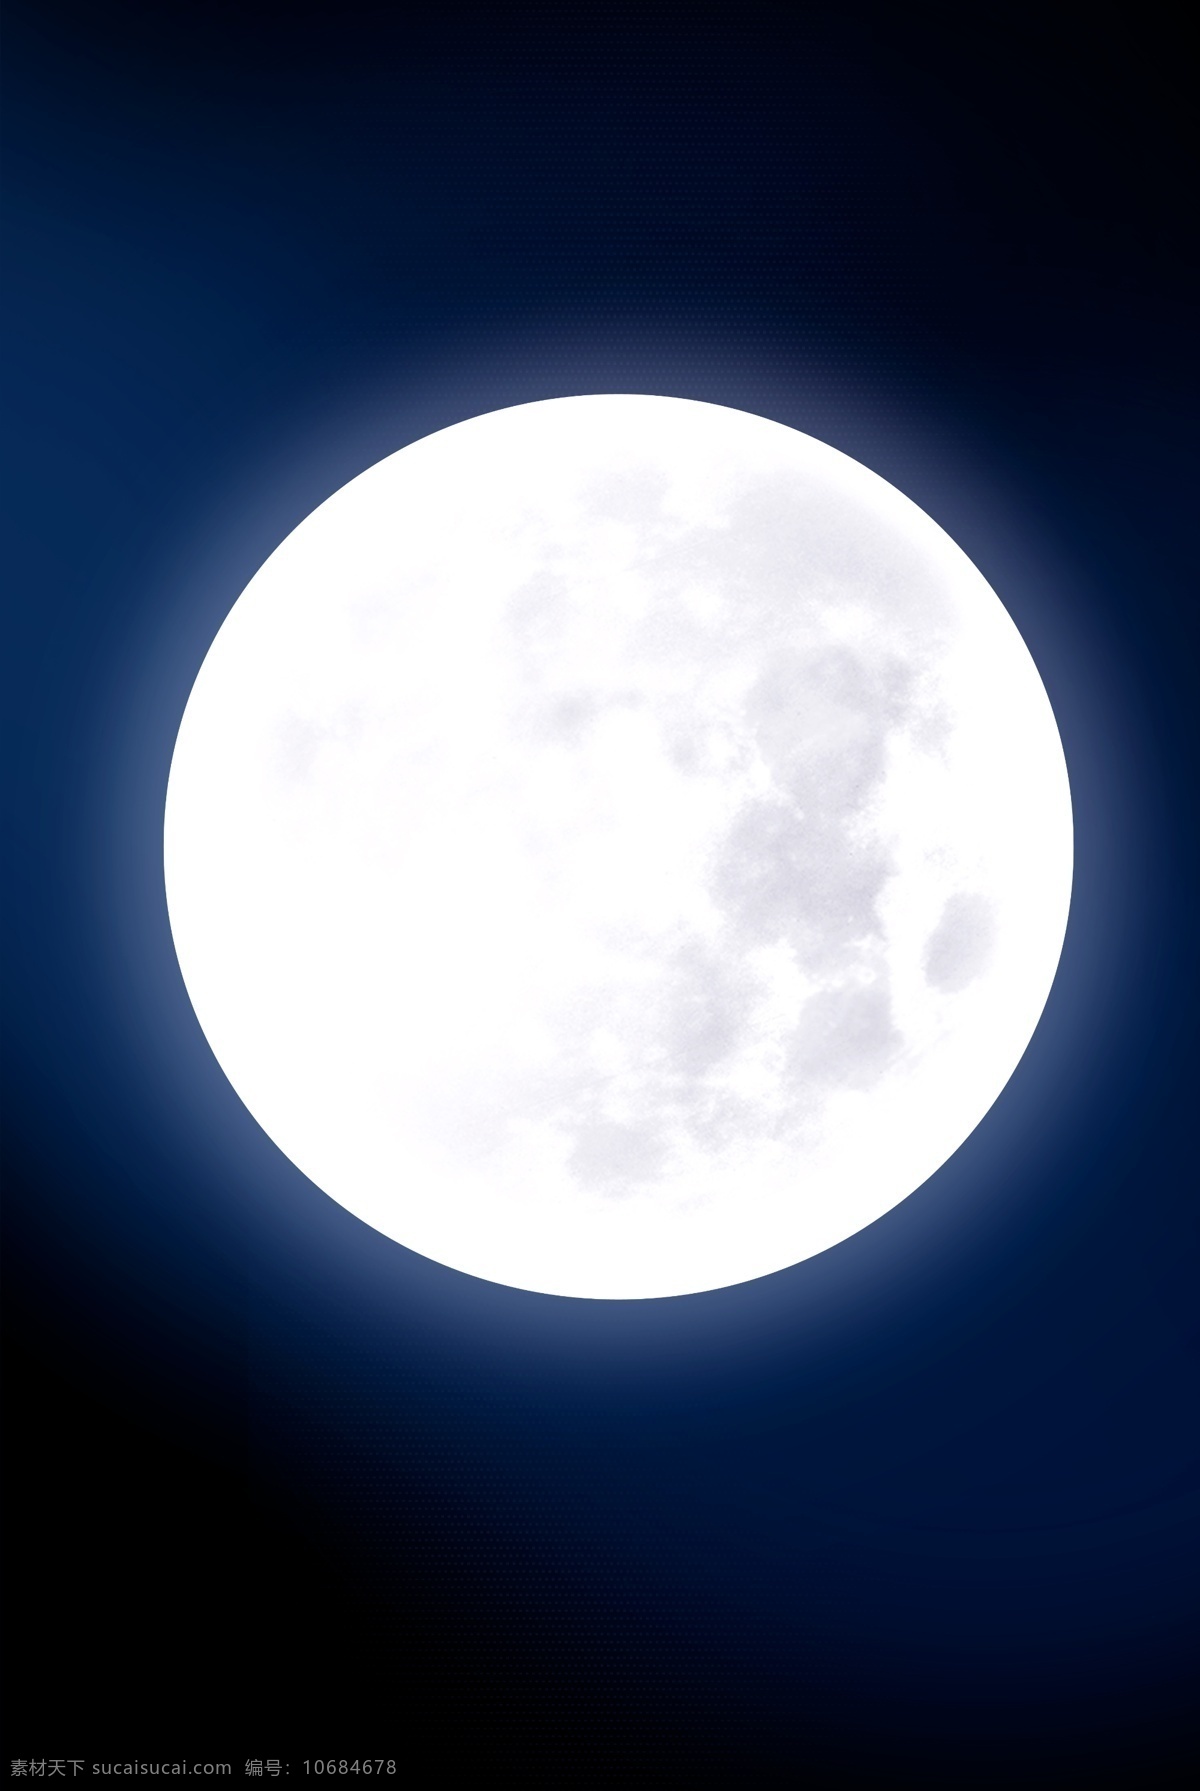 环境 月夜风高 诡异背景 中秋圆月 摄影图 自然景观 黑色背景 自然风光 夜晚 夜空 天空 明月 皓月 十五的月亮 中秋的月亮 满月月球 月亮素材 月亮背景 高清月亮 设计素材 分层